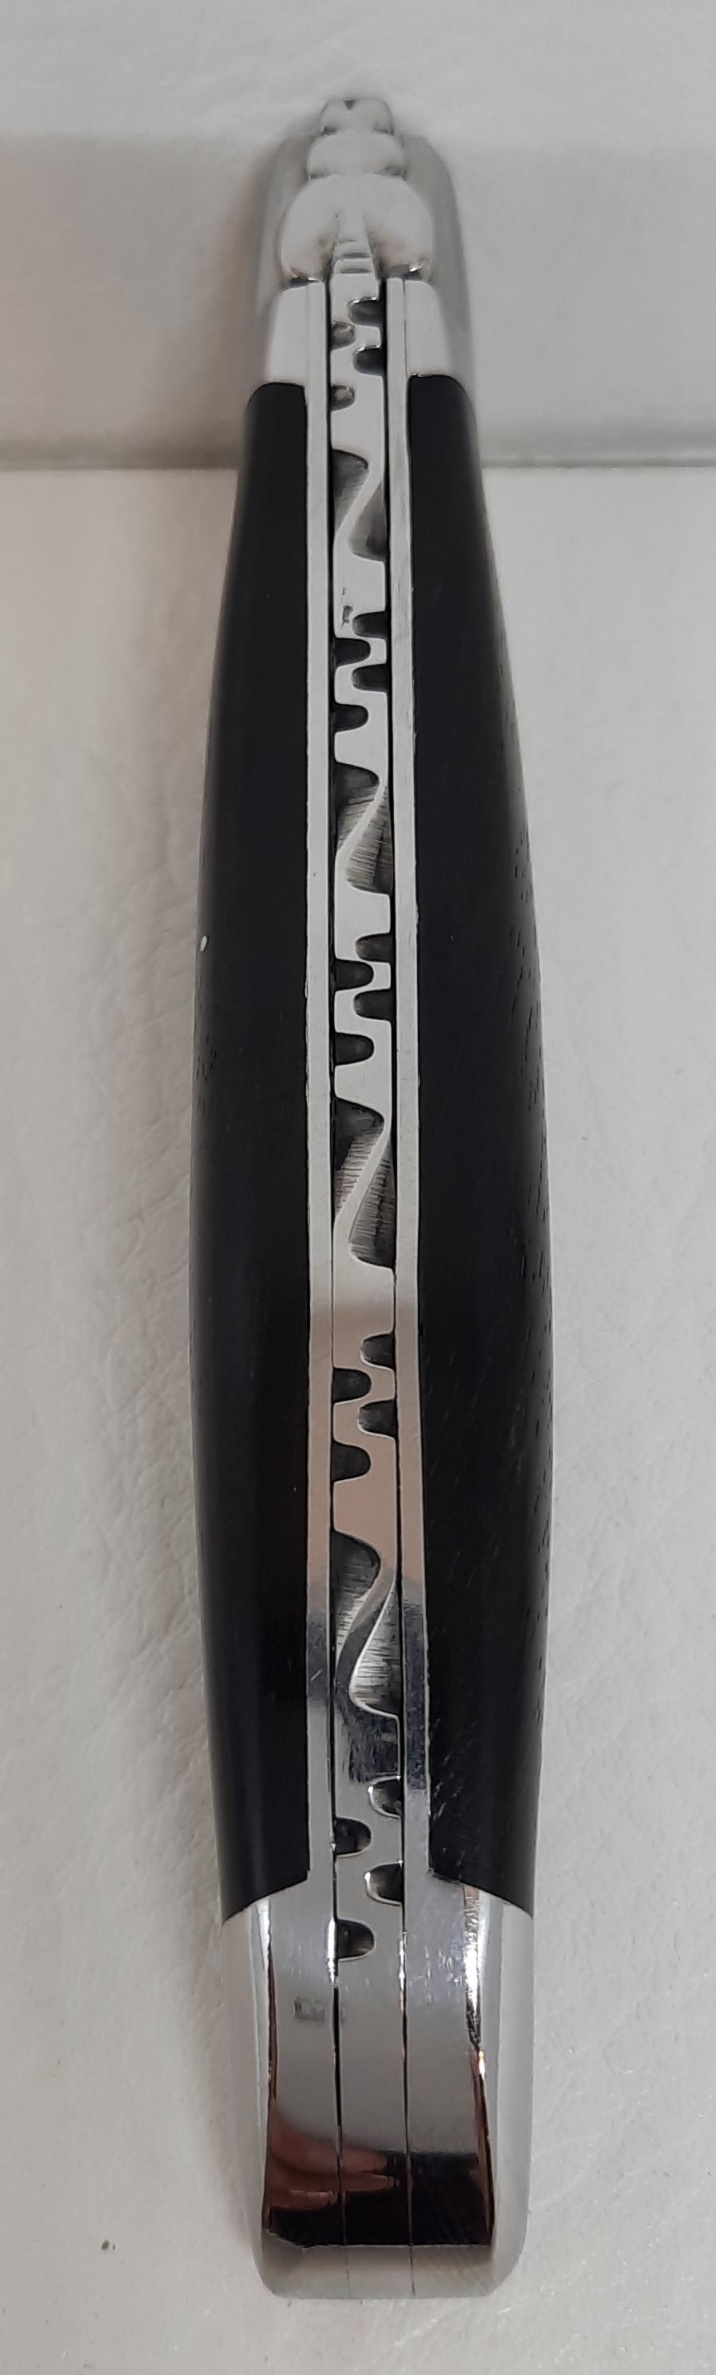 Laguiole Taschenmesser poliert Ebenholz 12 cm, Ebony, inox poliet 